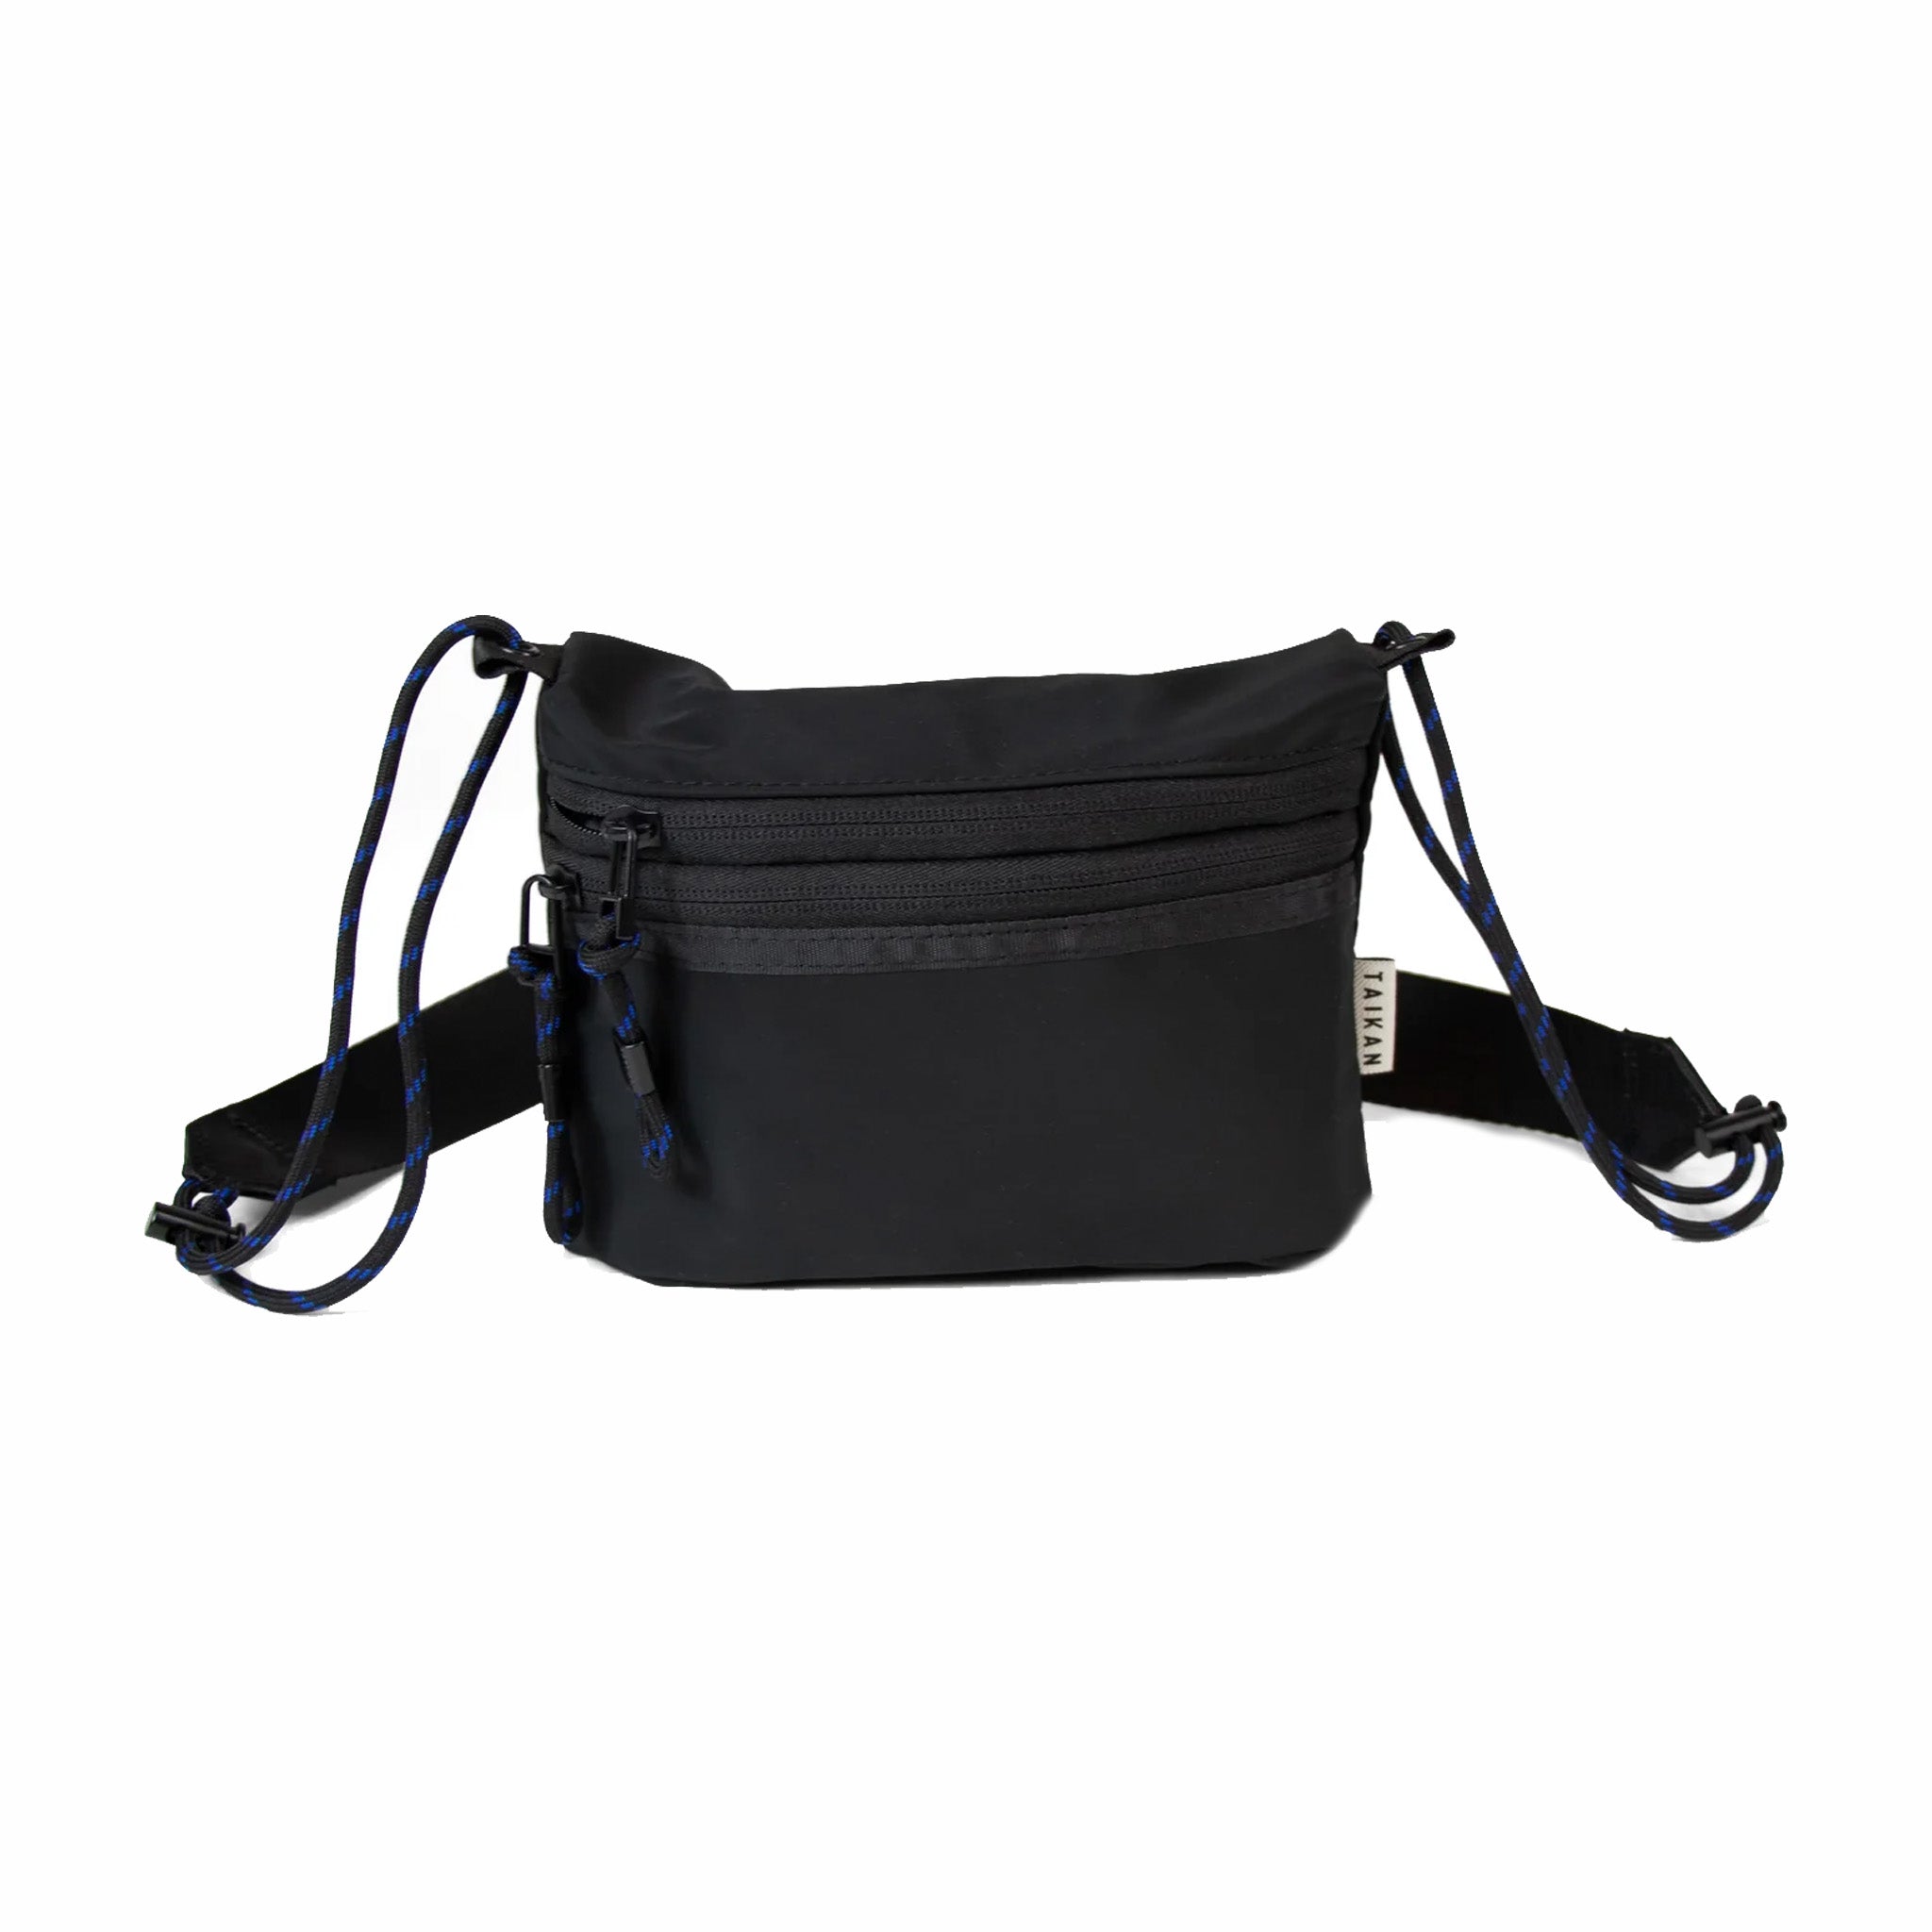 Taikan Sacoche Small Bag (Black) - August Shop